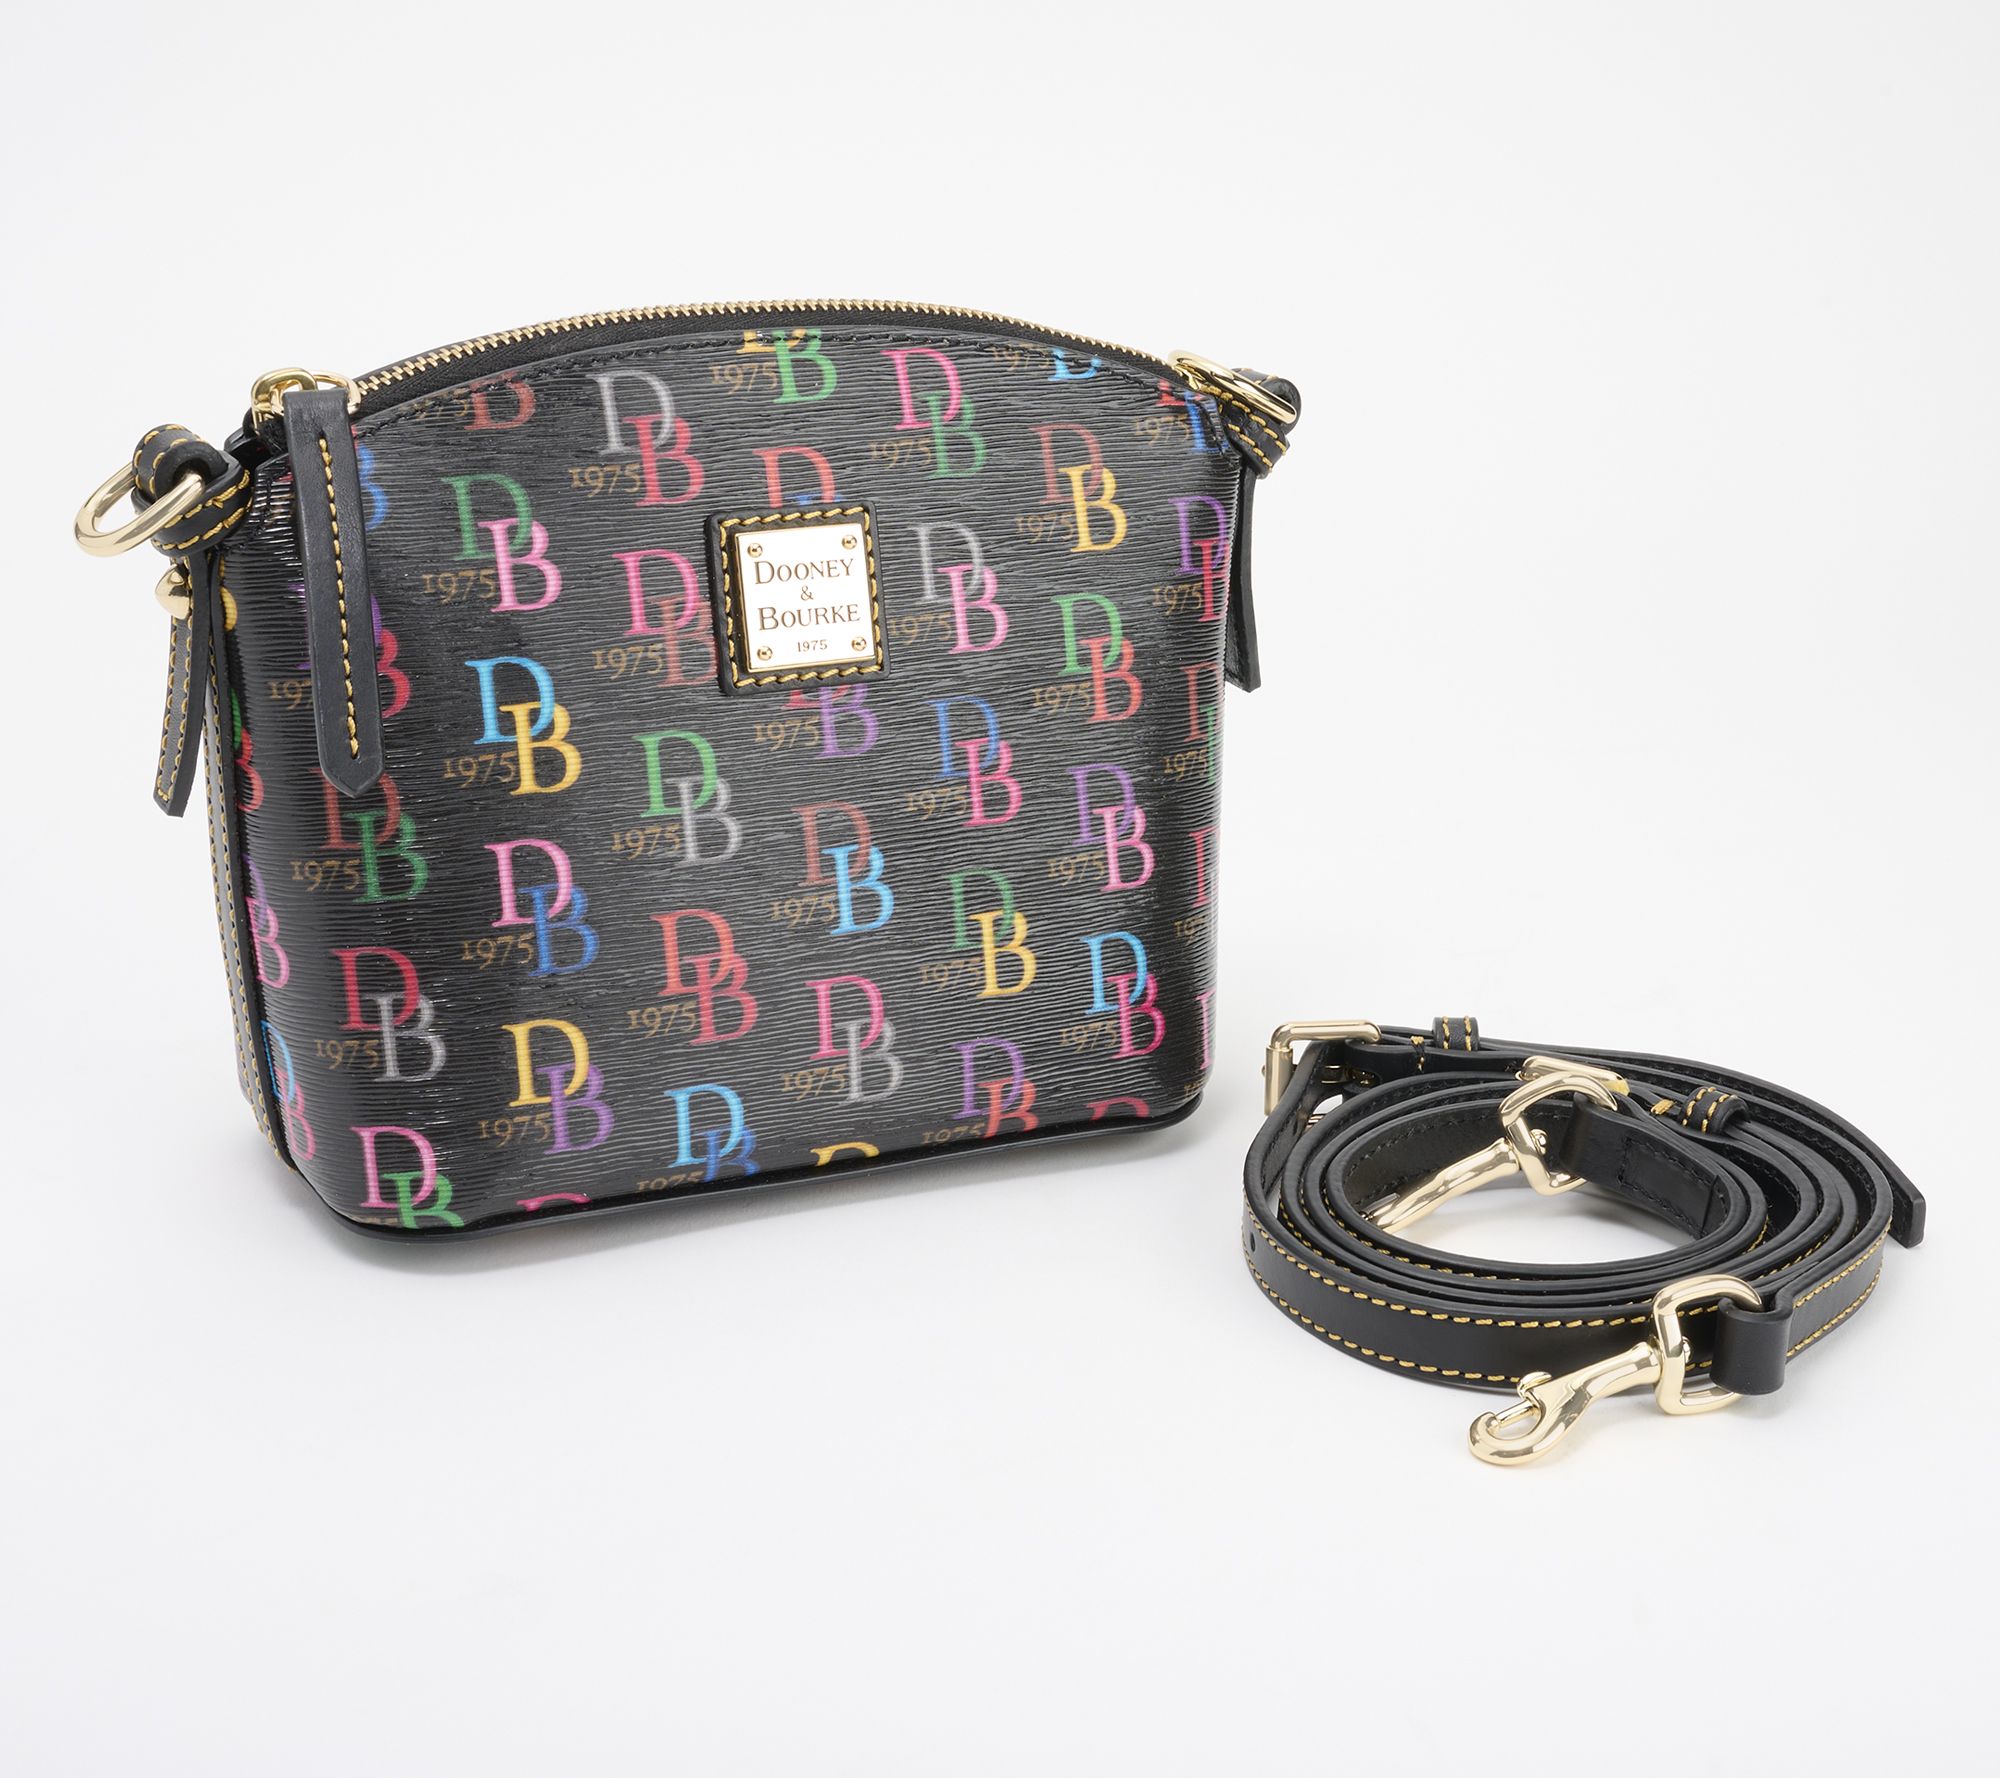 Dooney & Bourke Mini Domed Crossbody Bag